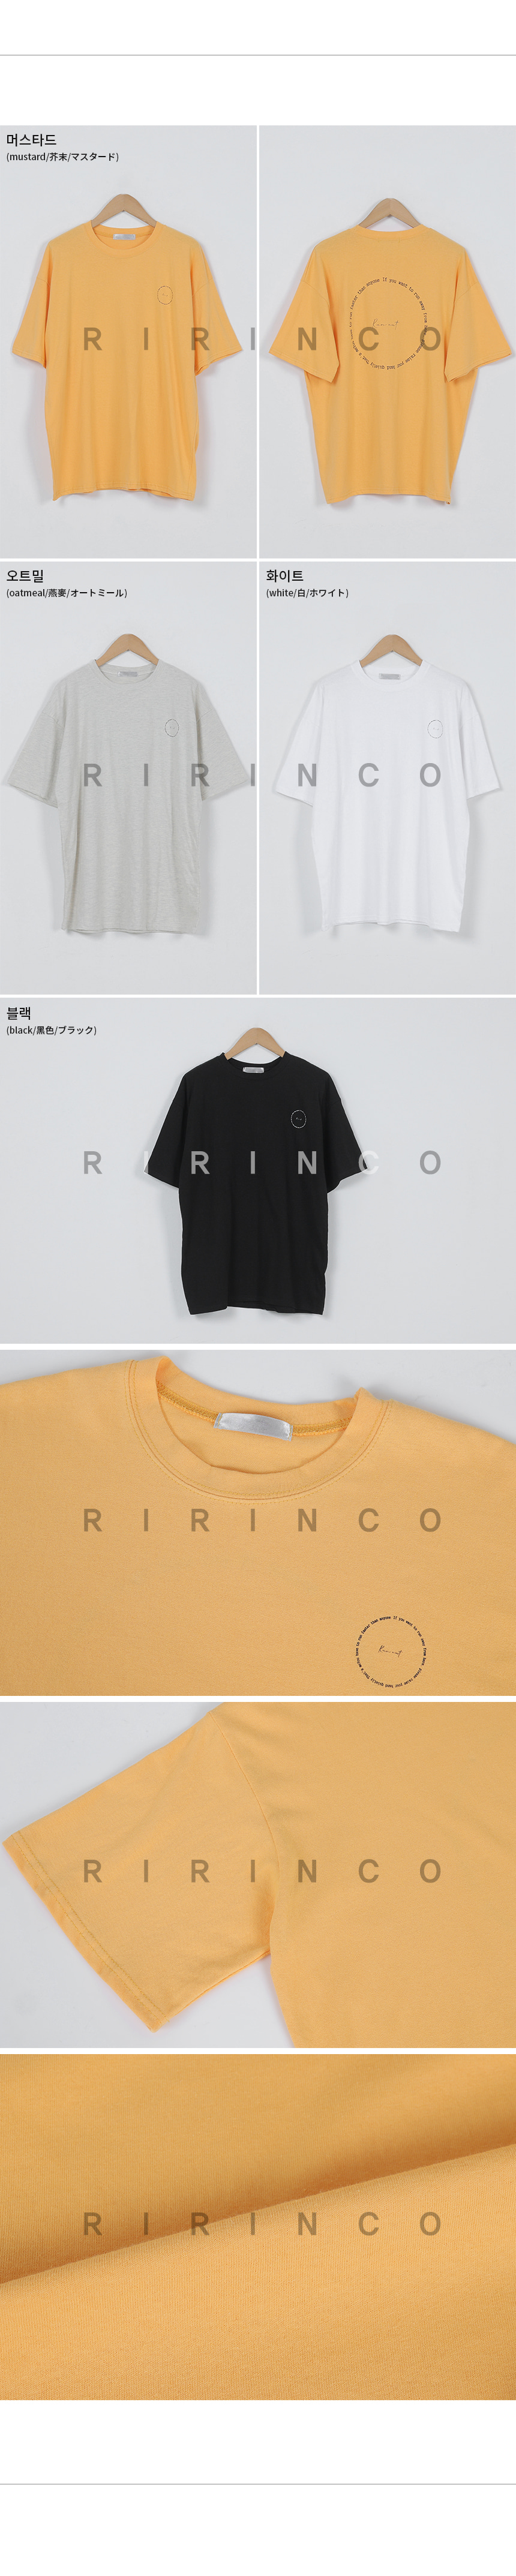 RIRINCO レタリングオーバーフィット半袖Tシャツ